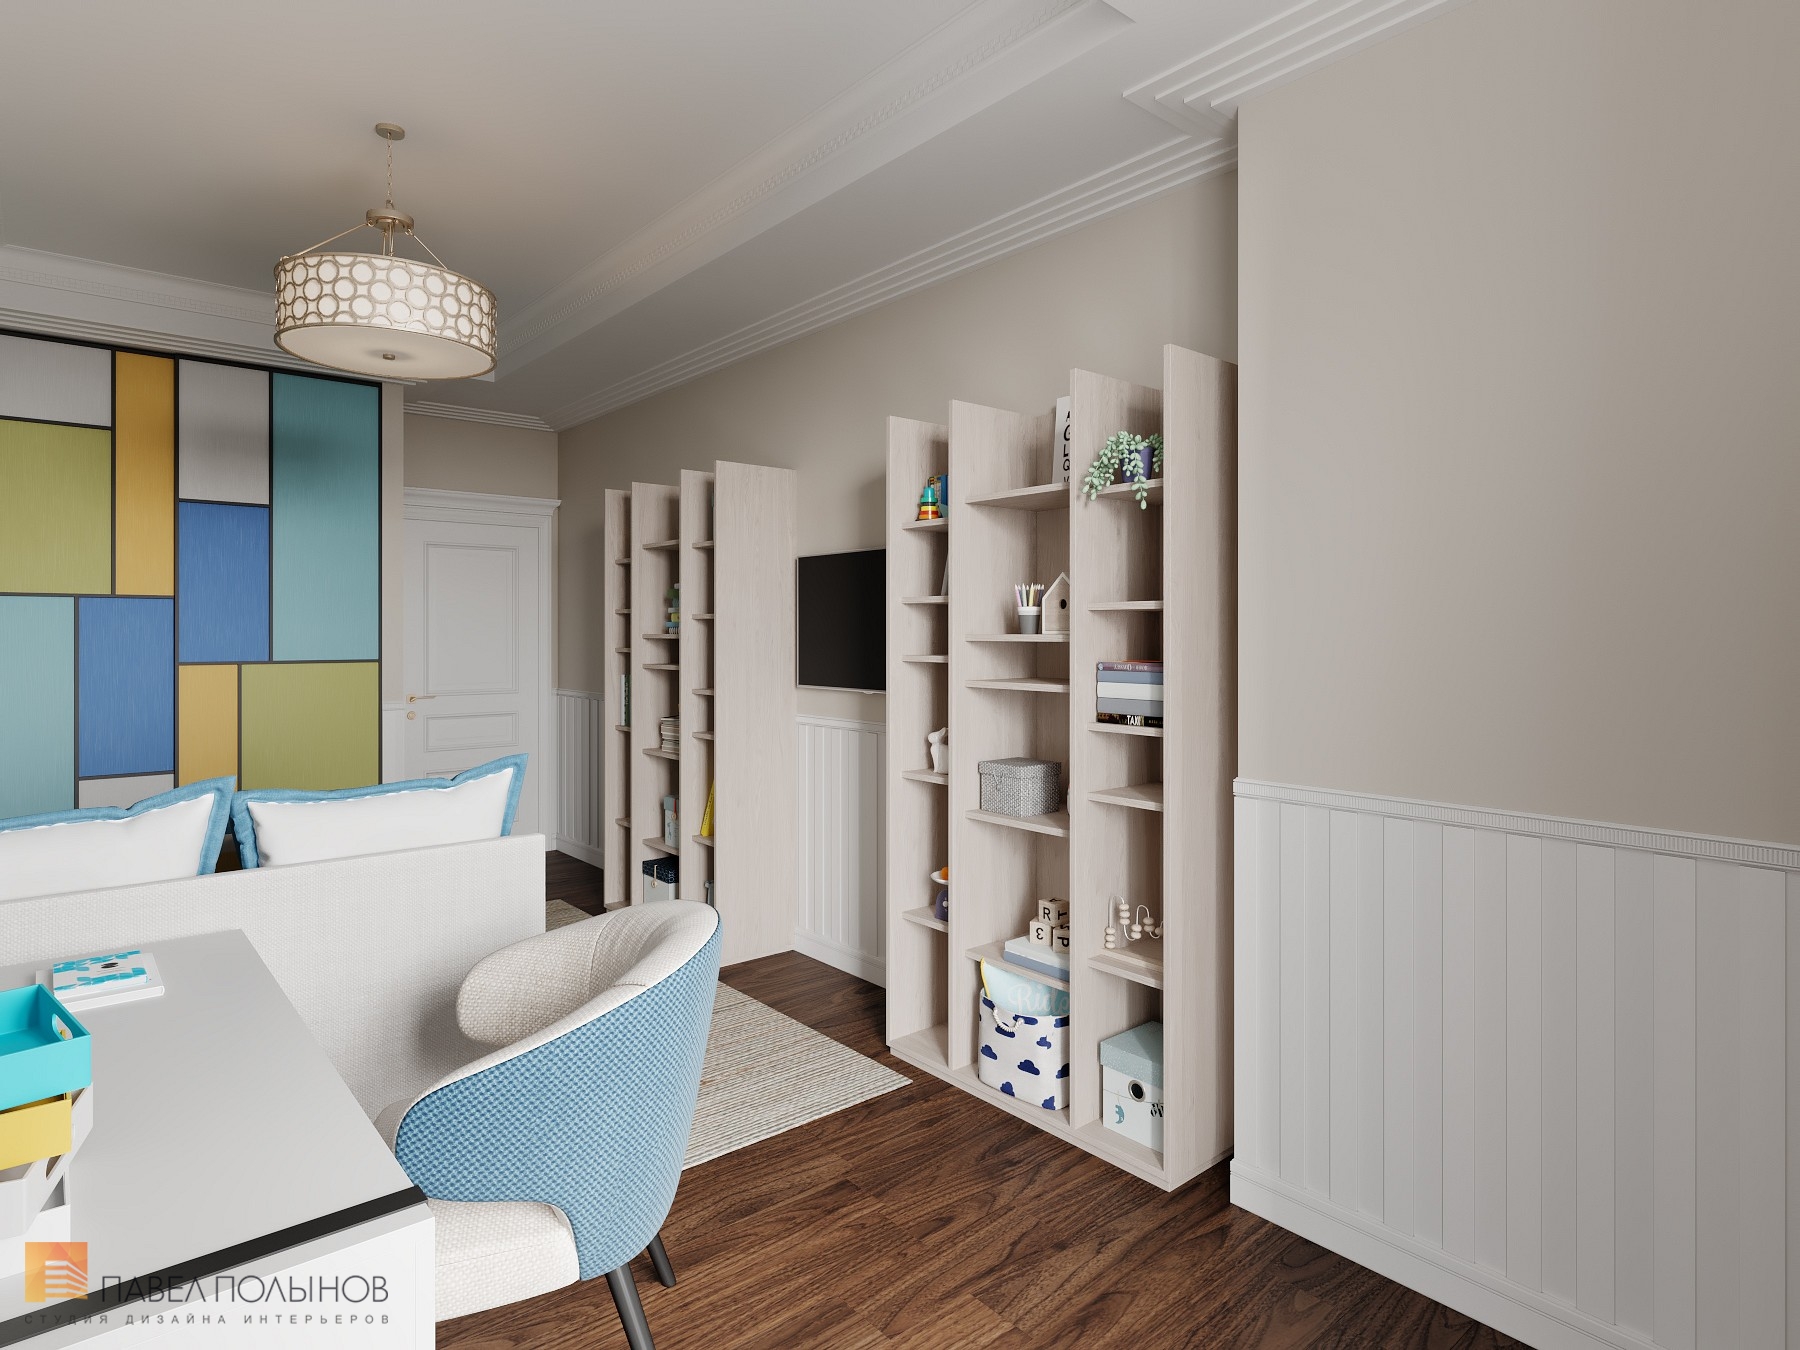 Фото дизайн интерьера детской комнаты из проекта «Интерьер квартиры 200 кв.м. в стиле Ар-деко, ЖК «Граф Орлов»»